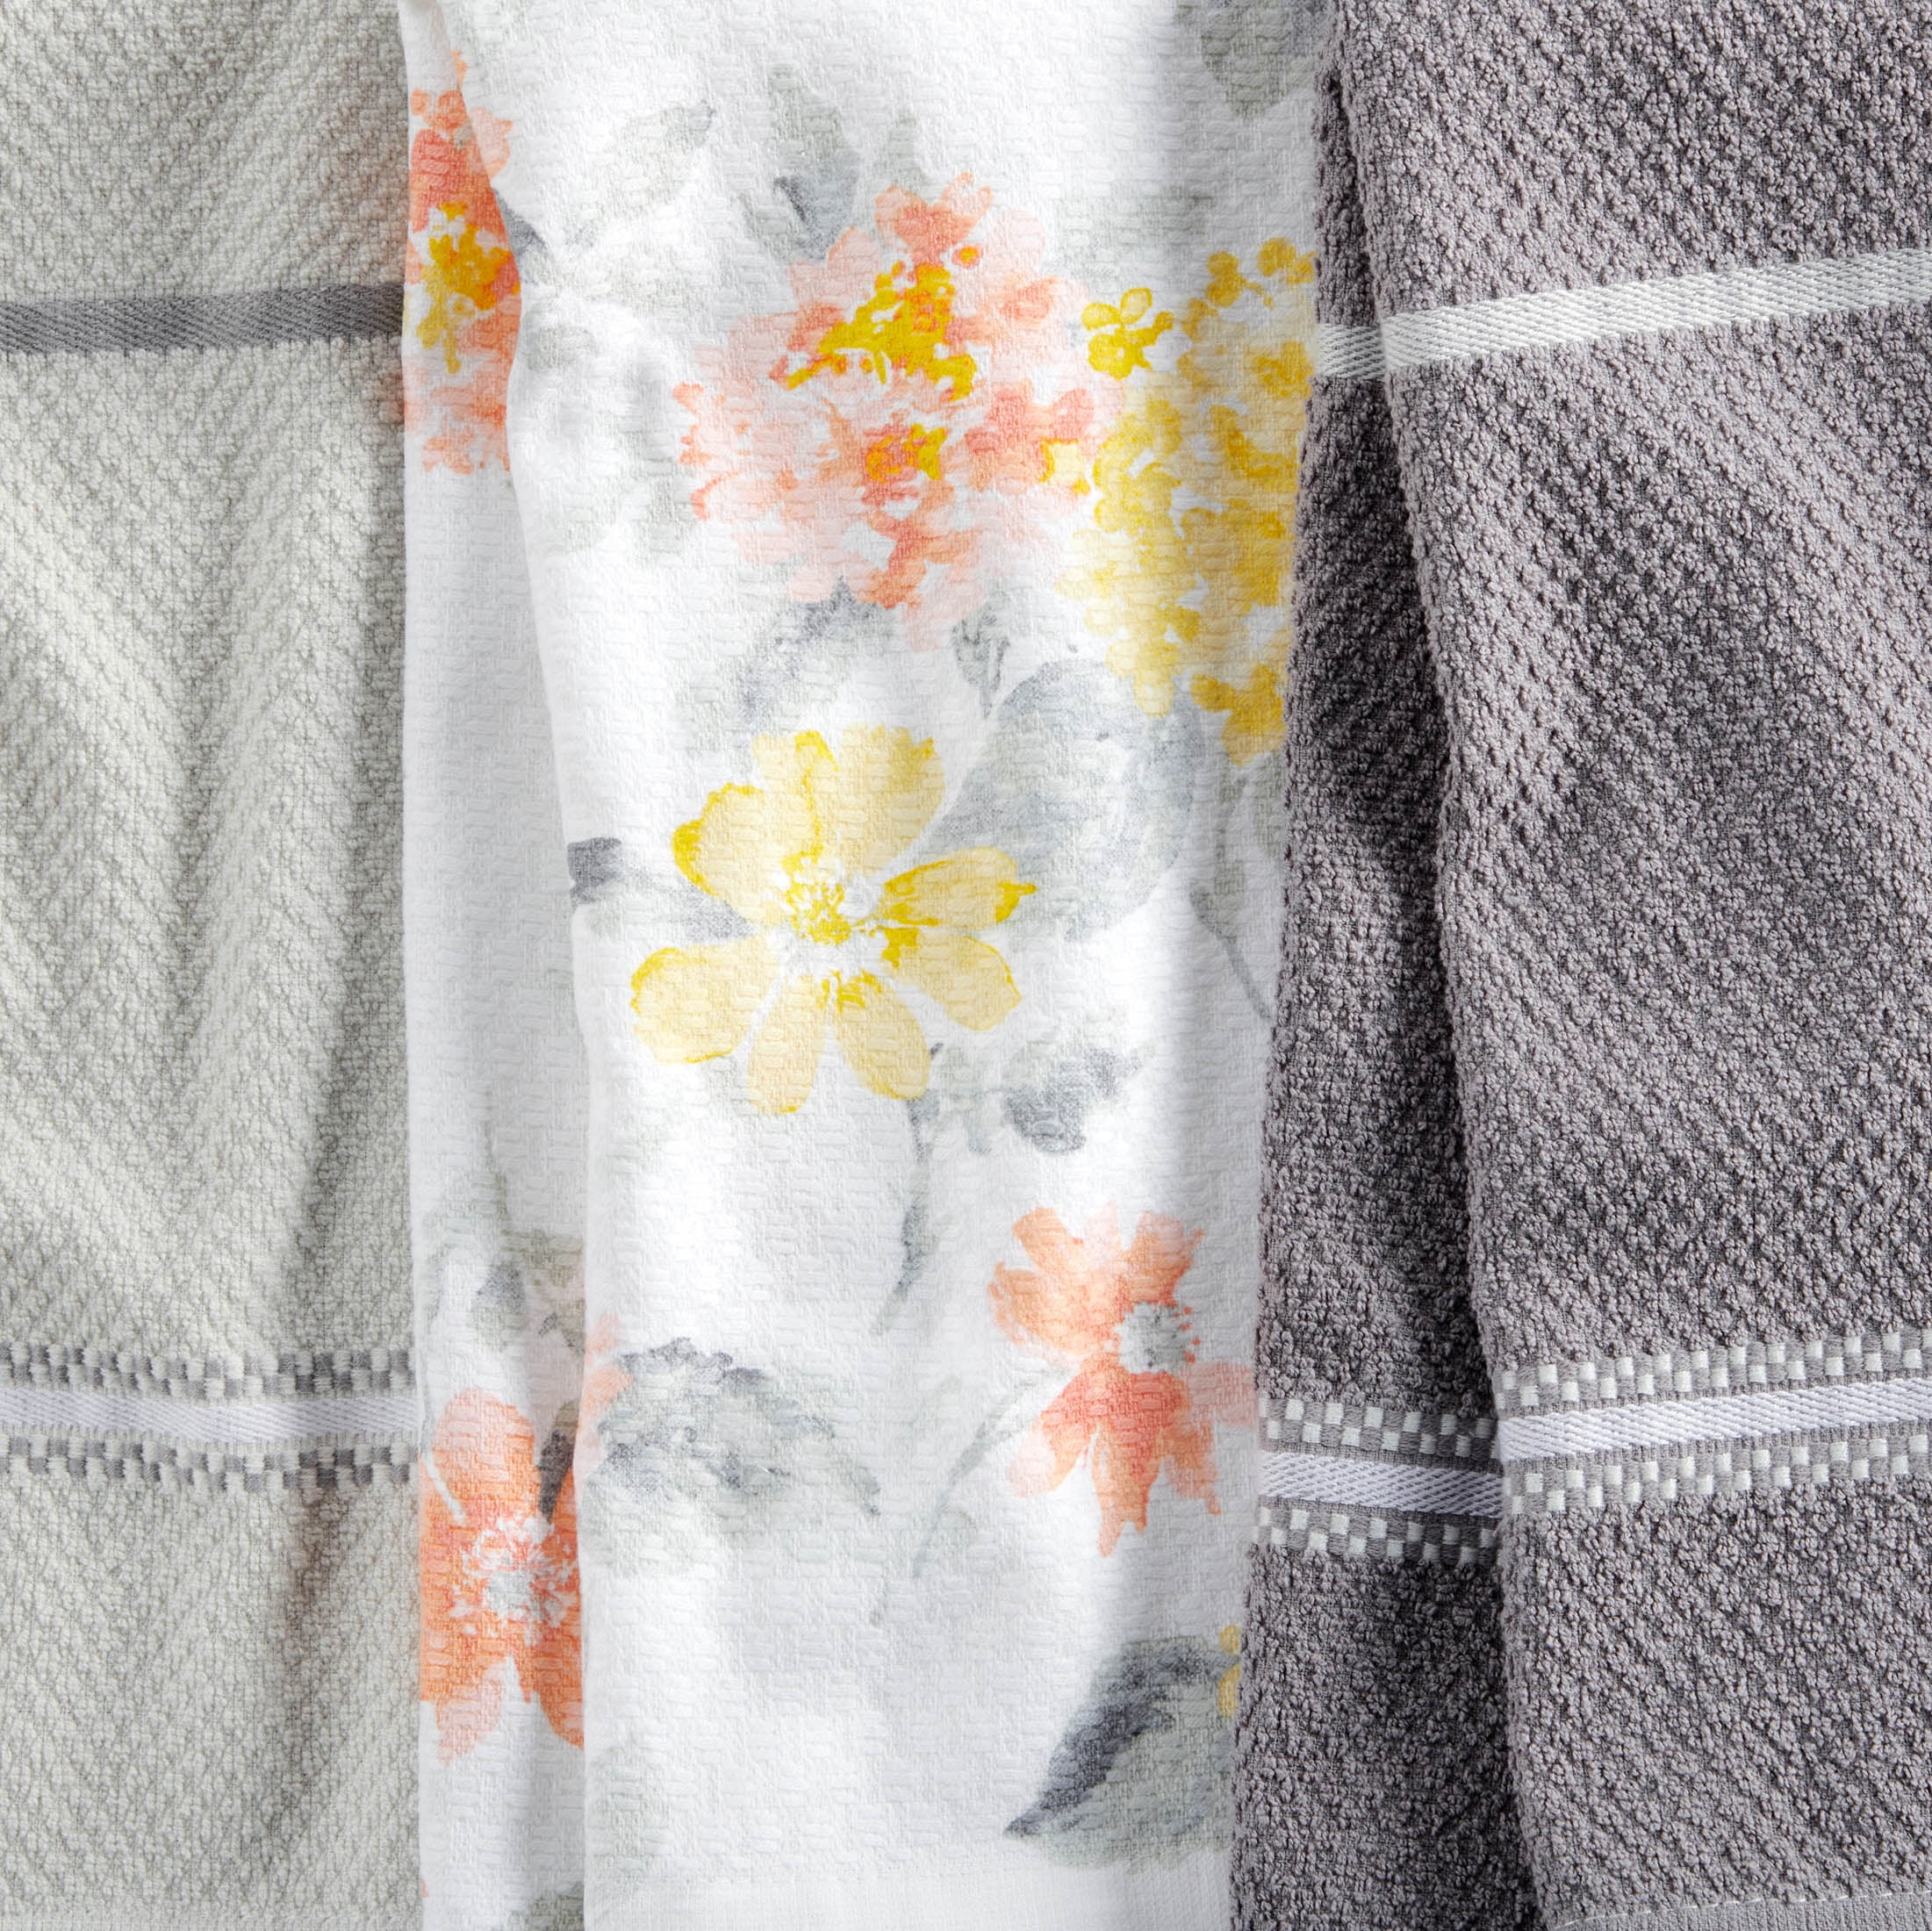 Martha Stewart Everyday Texture Towel 8 Piece Set - Gaugan Coral 